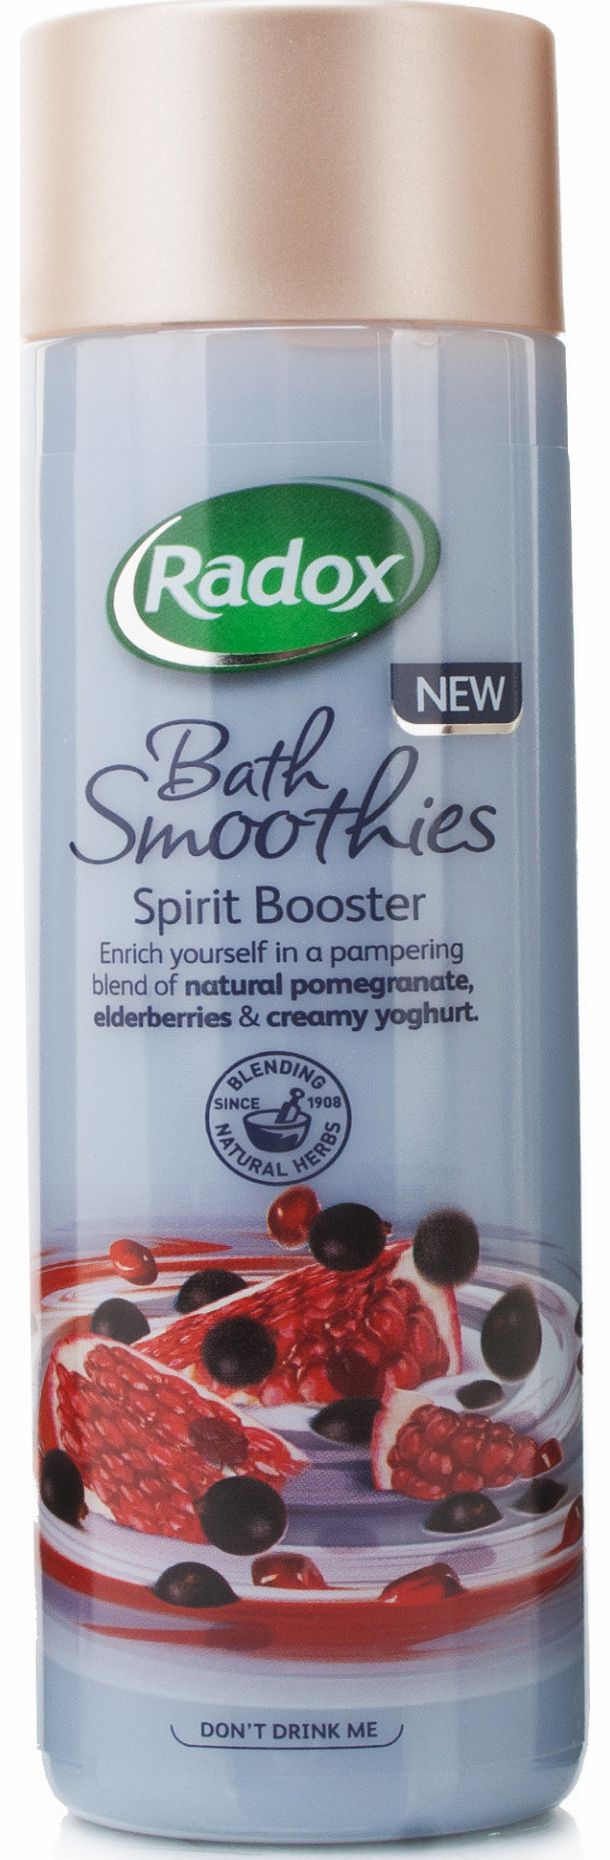 Radox Bath Smoothies Spirit Booster